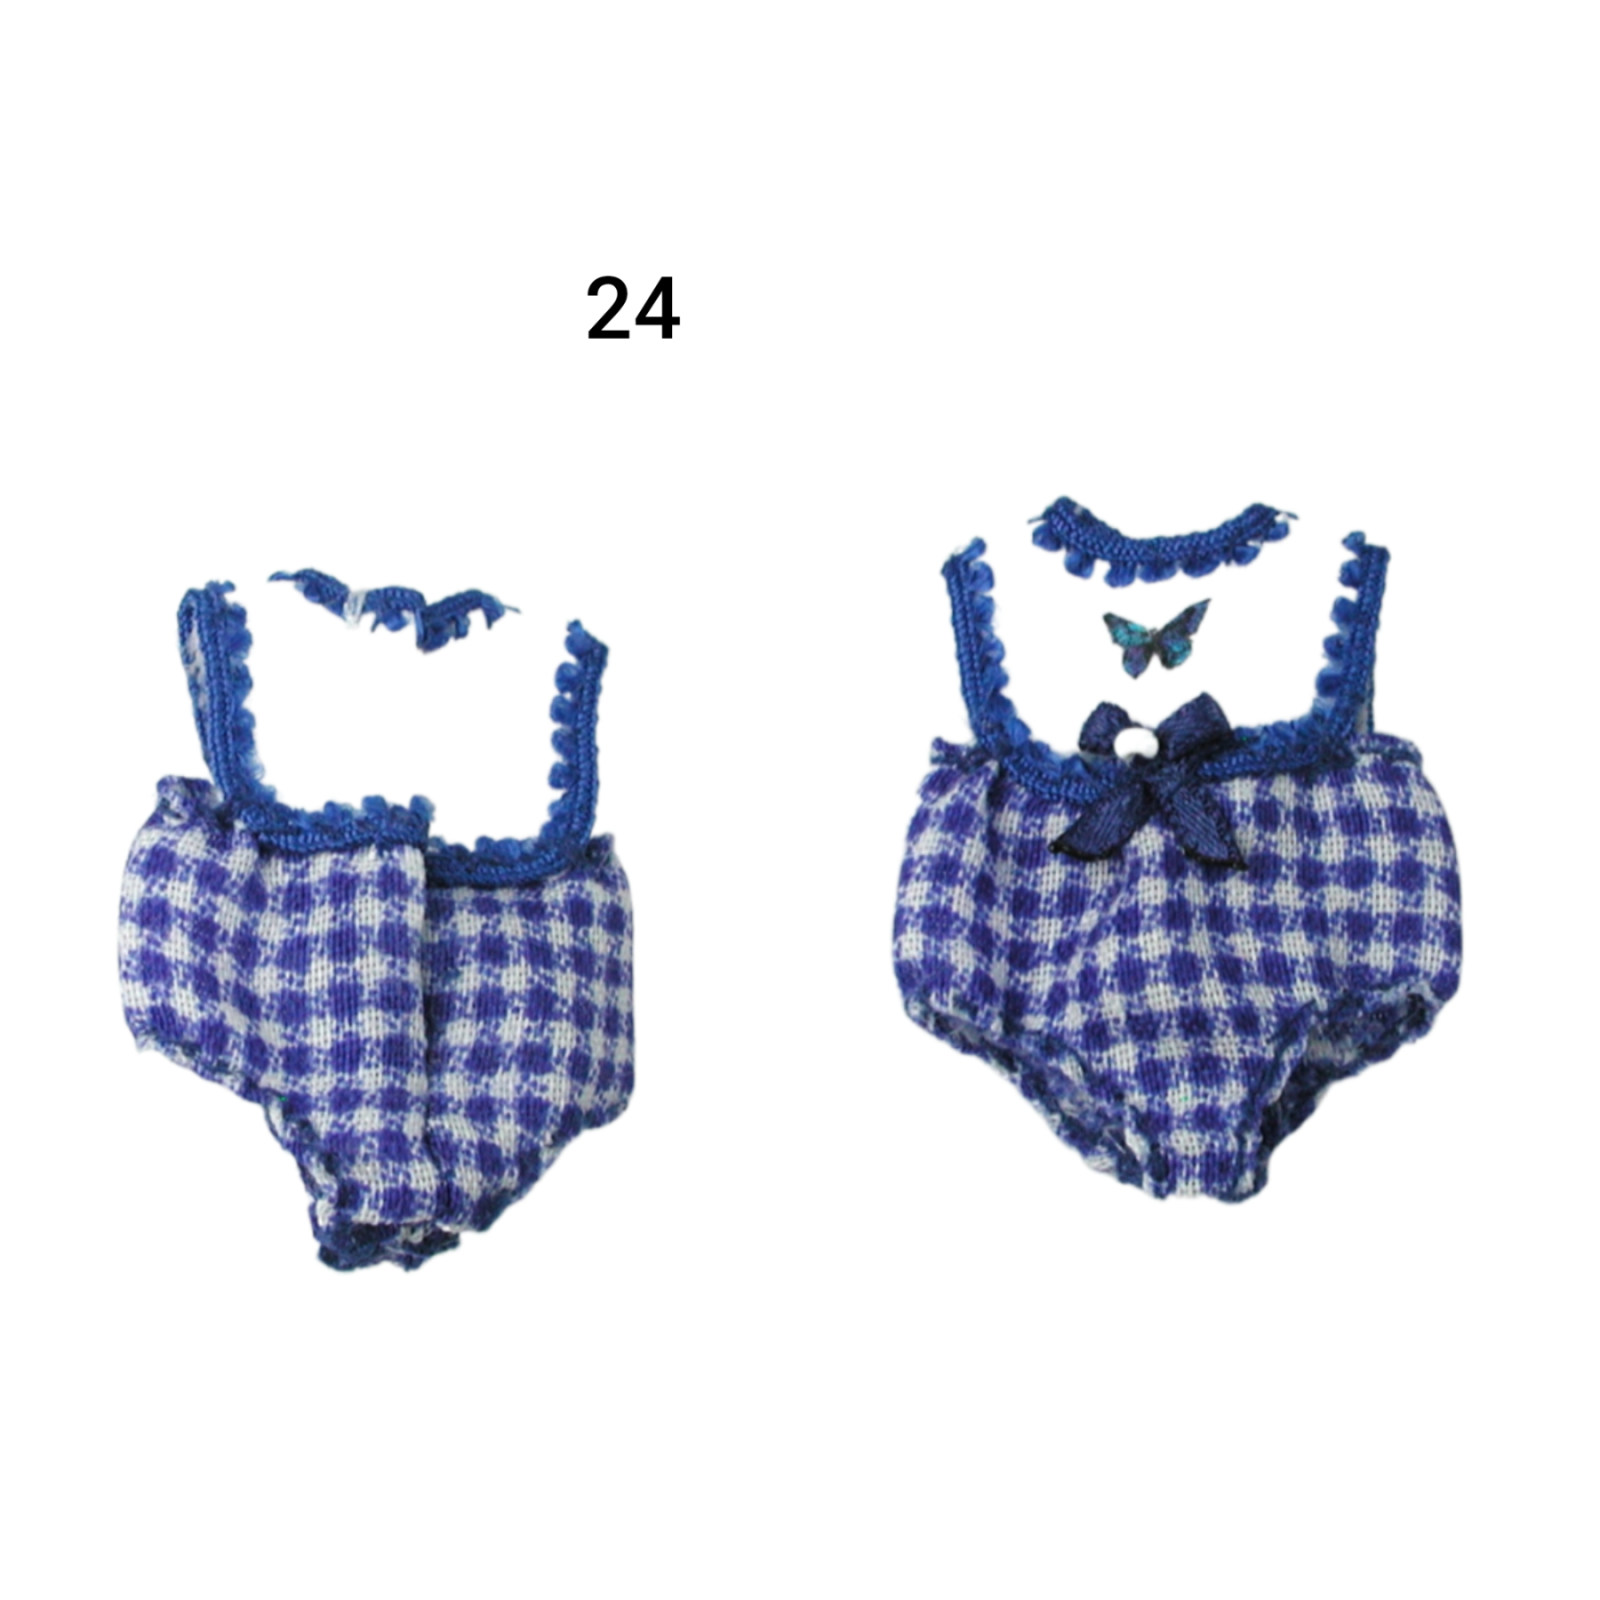 Pumphose Spielhose für das Baby Kleidung Maßstab 1:12